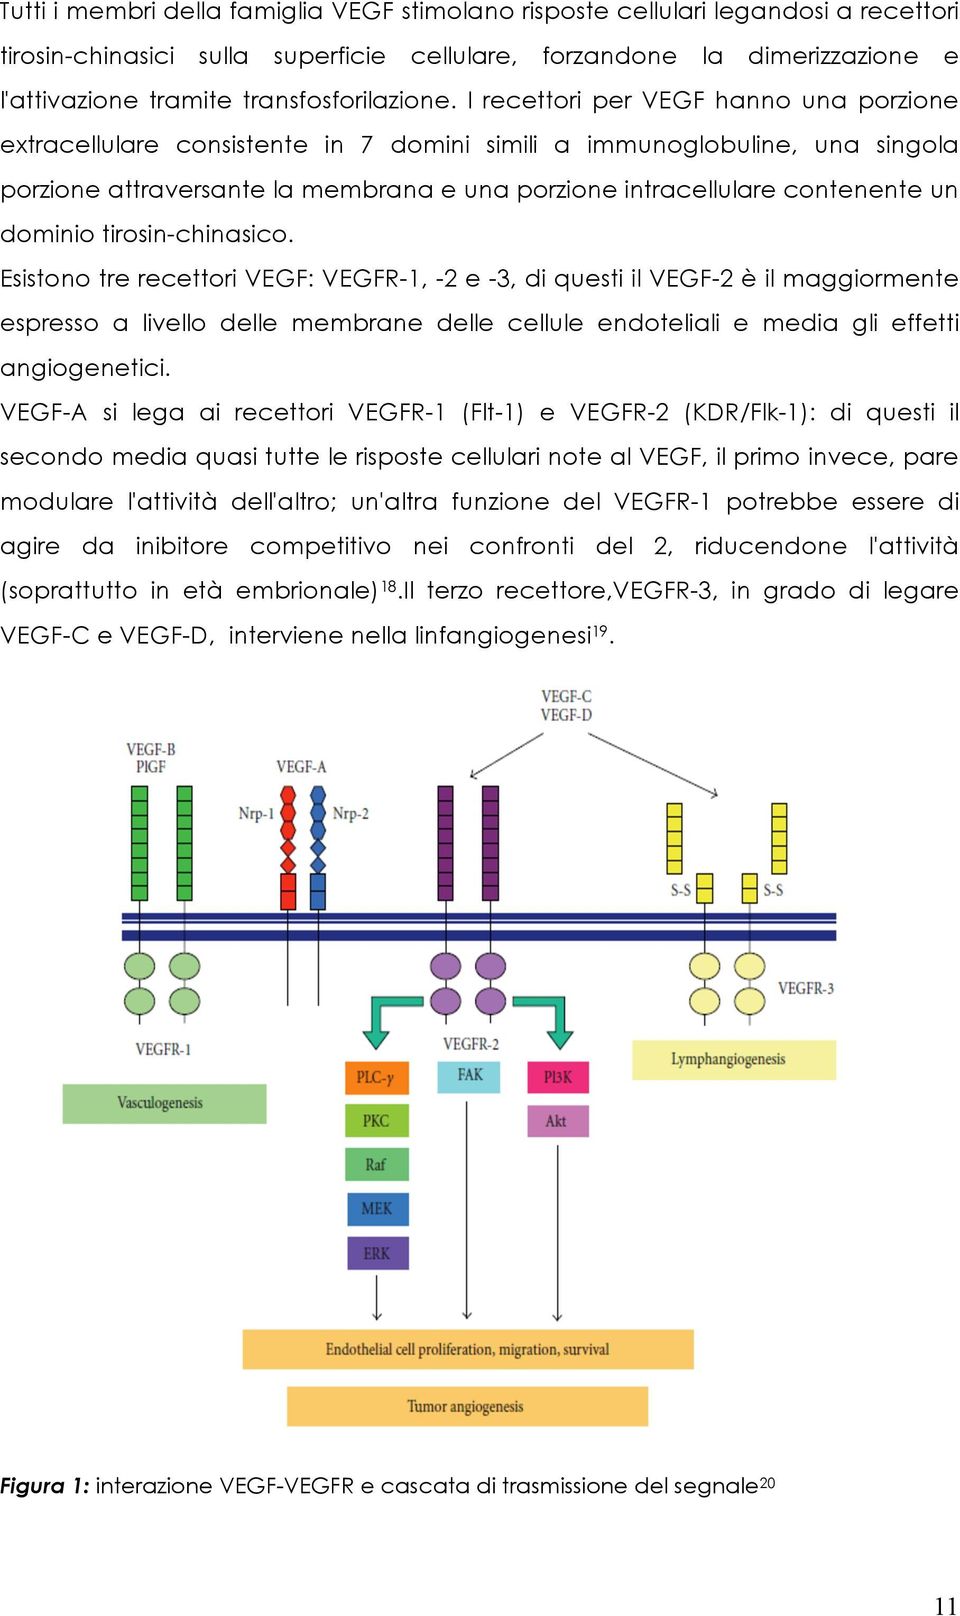 I recettori per VEGF hanno una porzione extracellulare consistente in 7 domini simili a immunoglobuline, una singola porzione attraversante la membrana e una porzione intracellulare contenente un